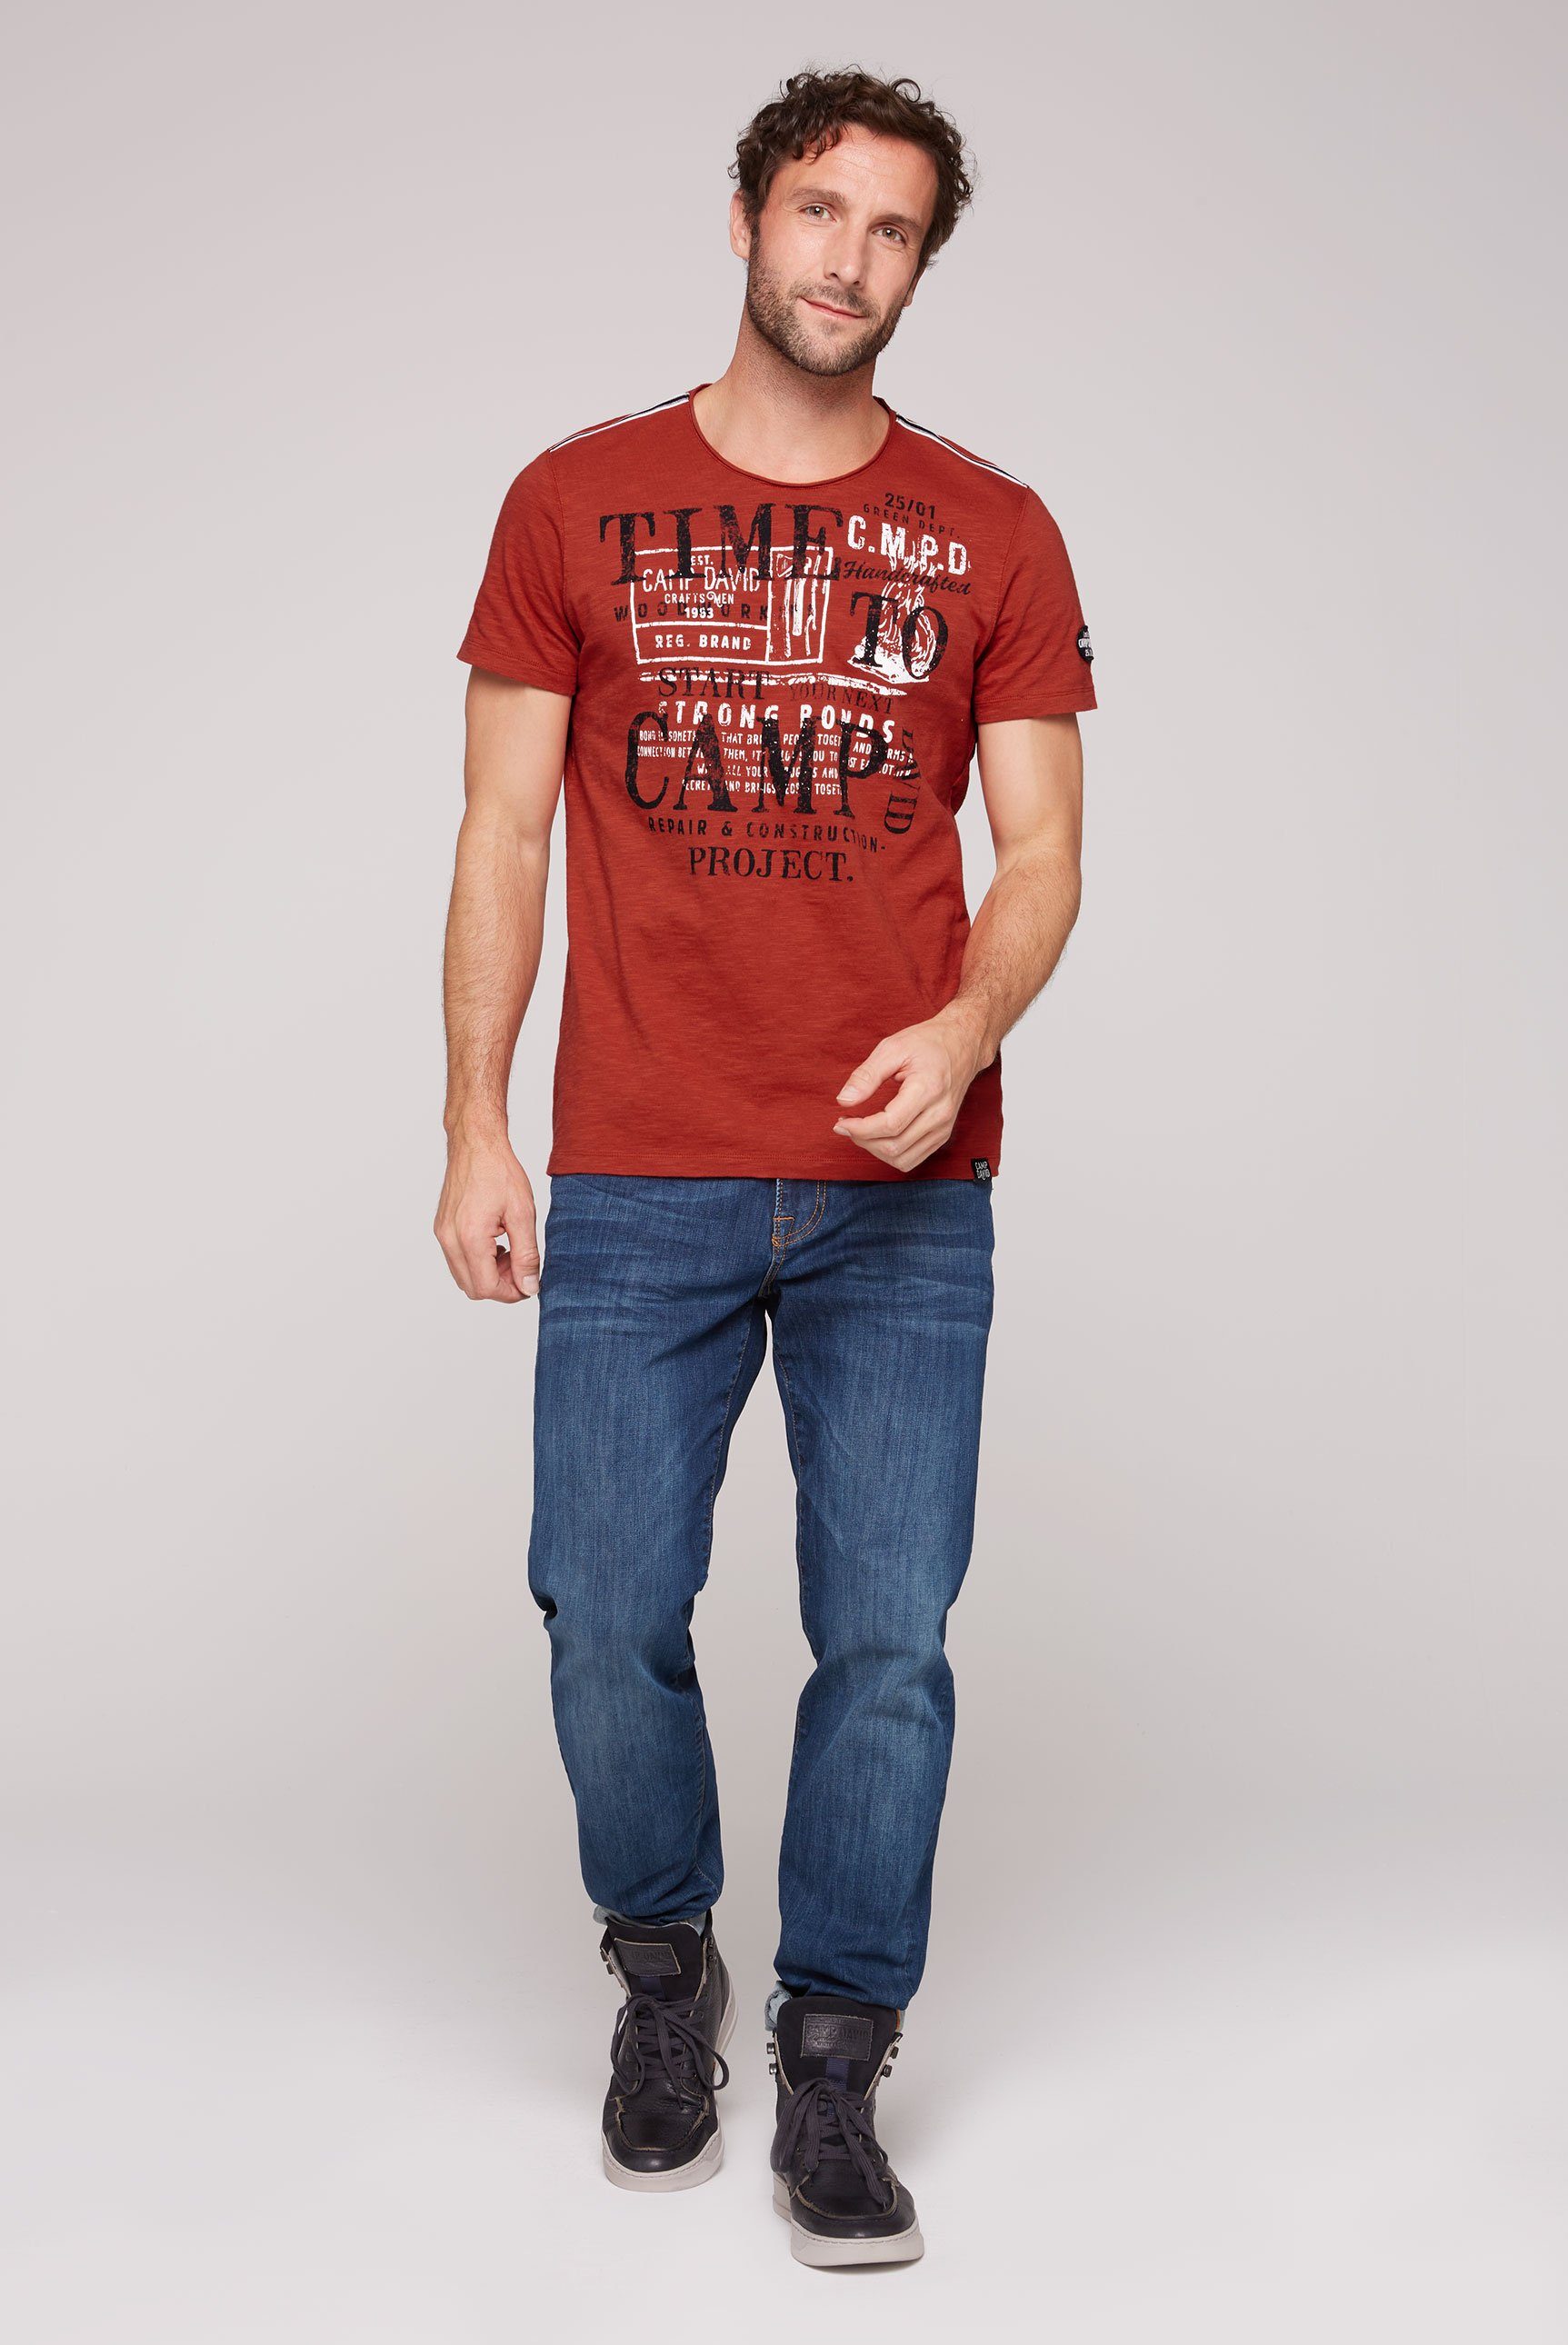 CAMP DAVID T-Shirt mit Logoprints red hinten vintage vorne und